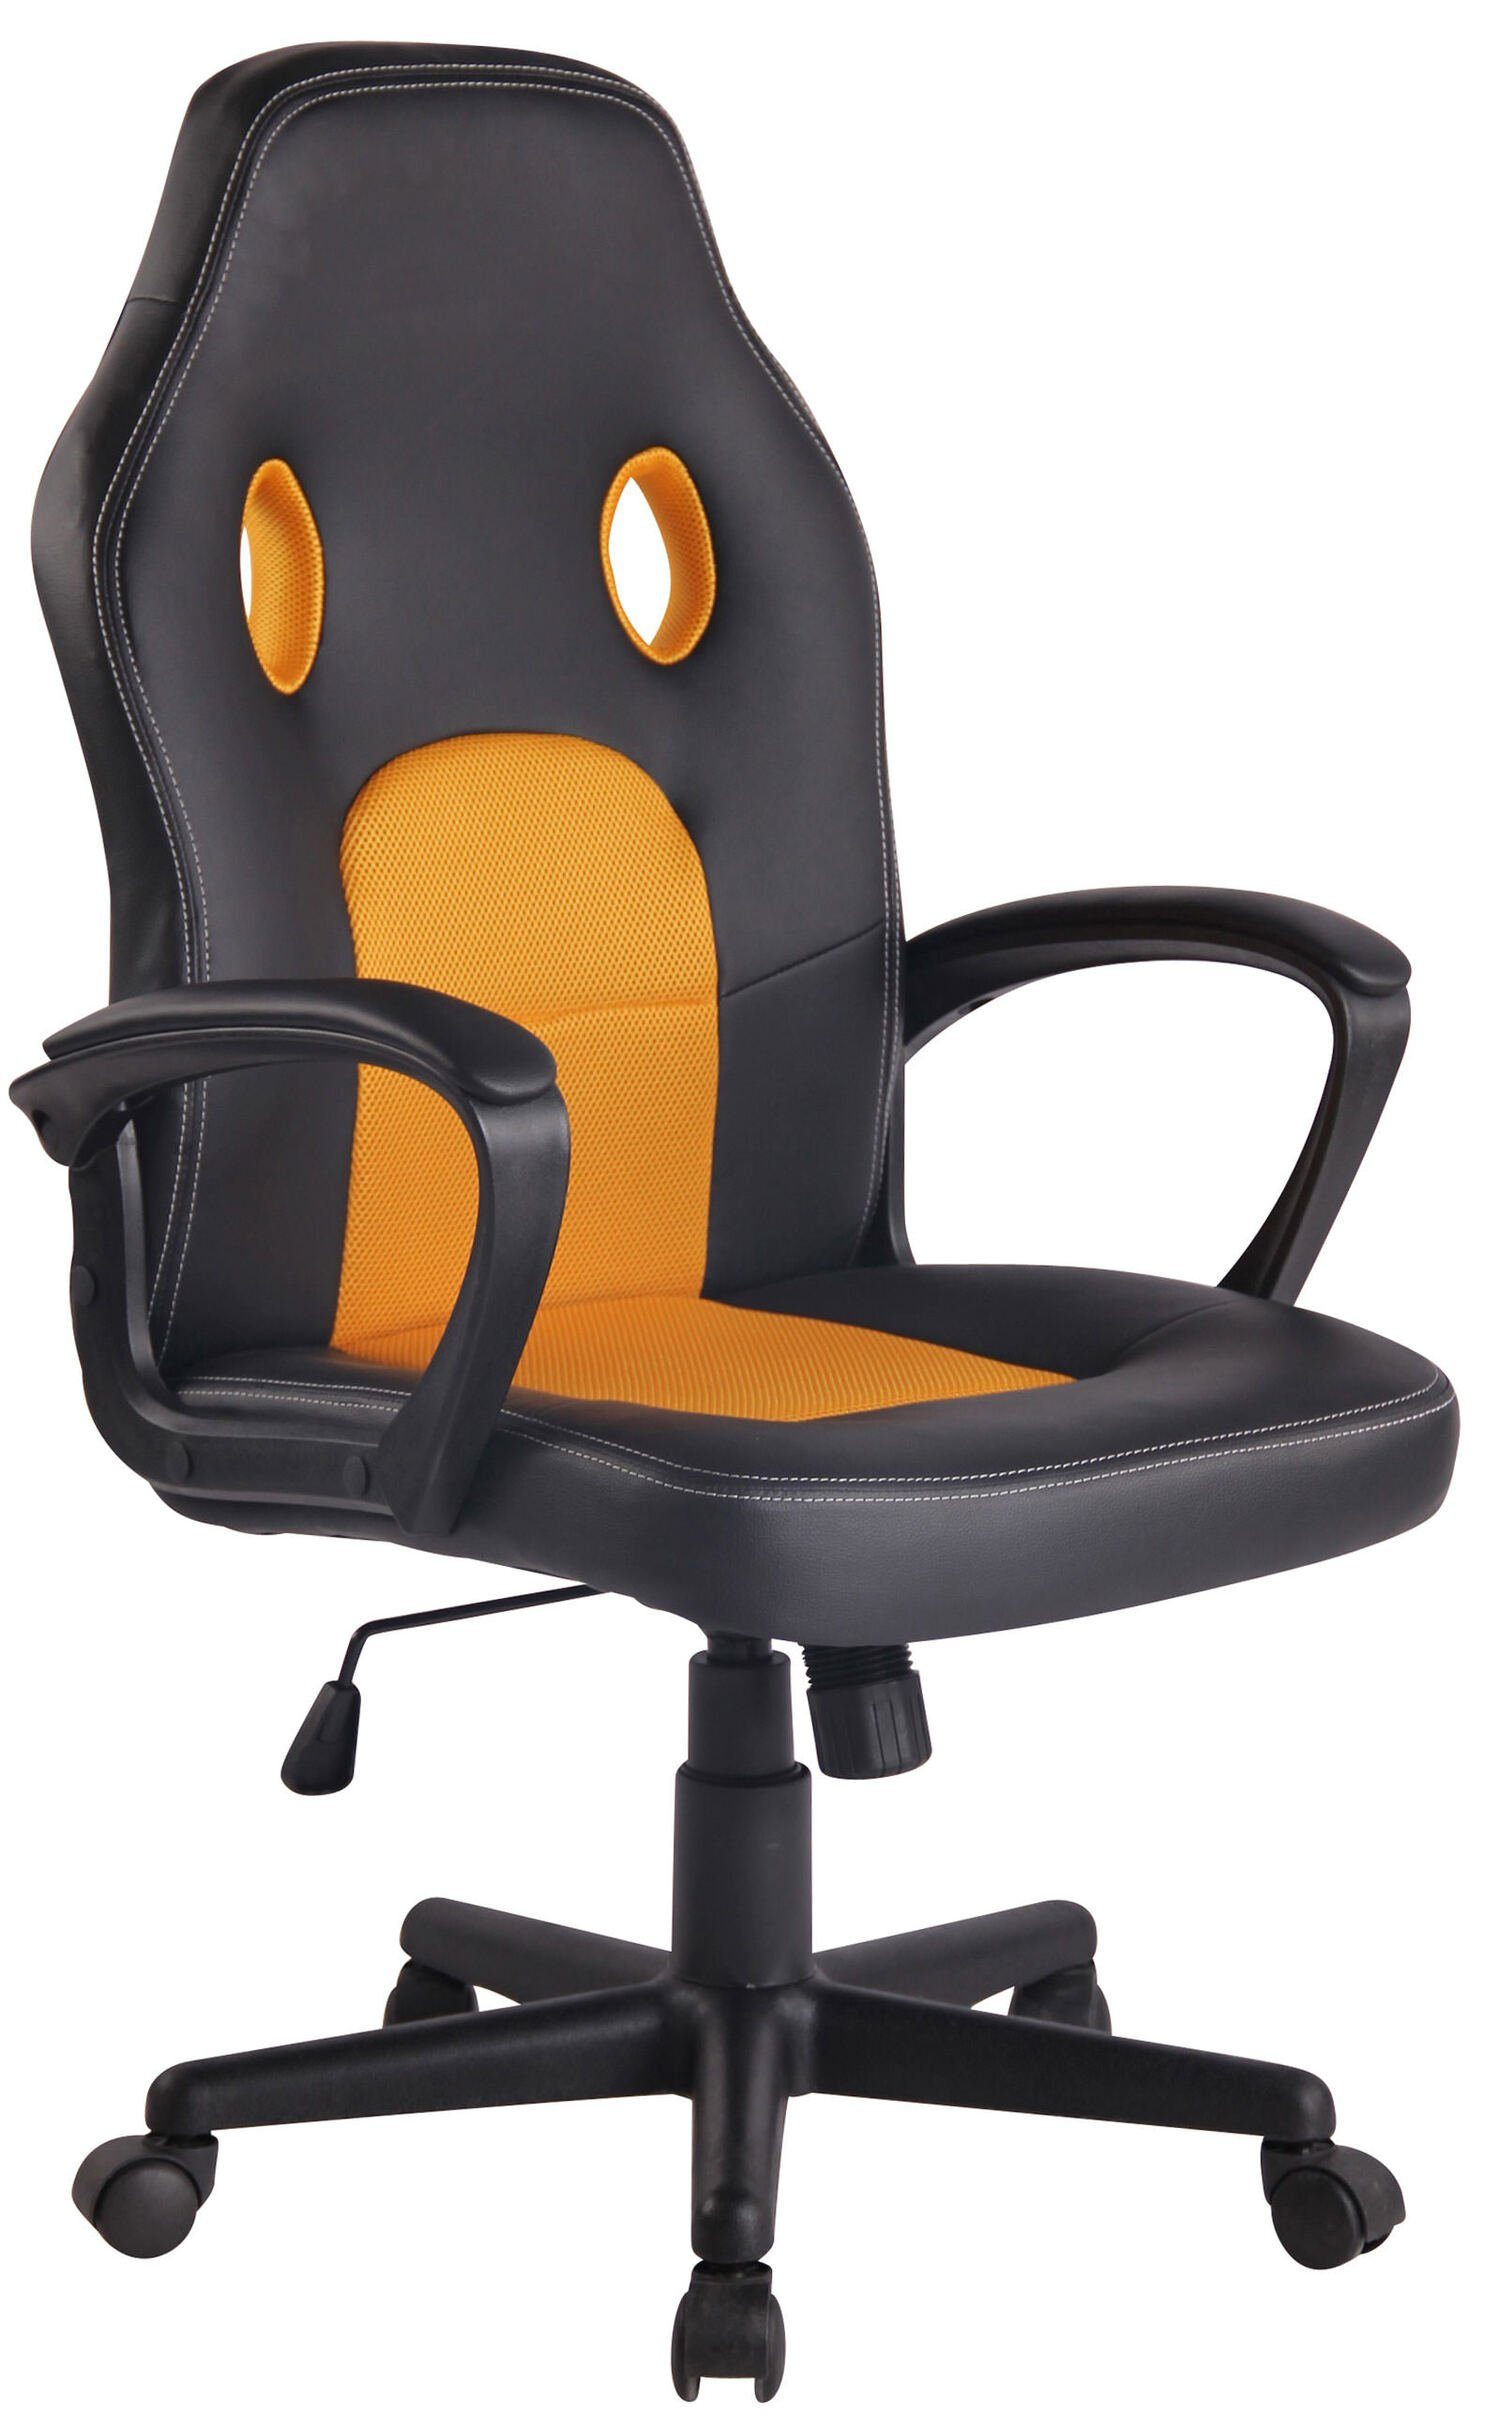 Schwarzer Stuhl mit Sitzschale aus Kunstleder & Kunststoff